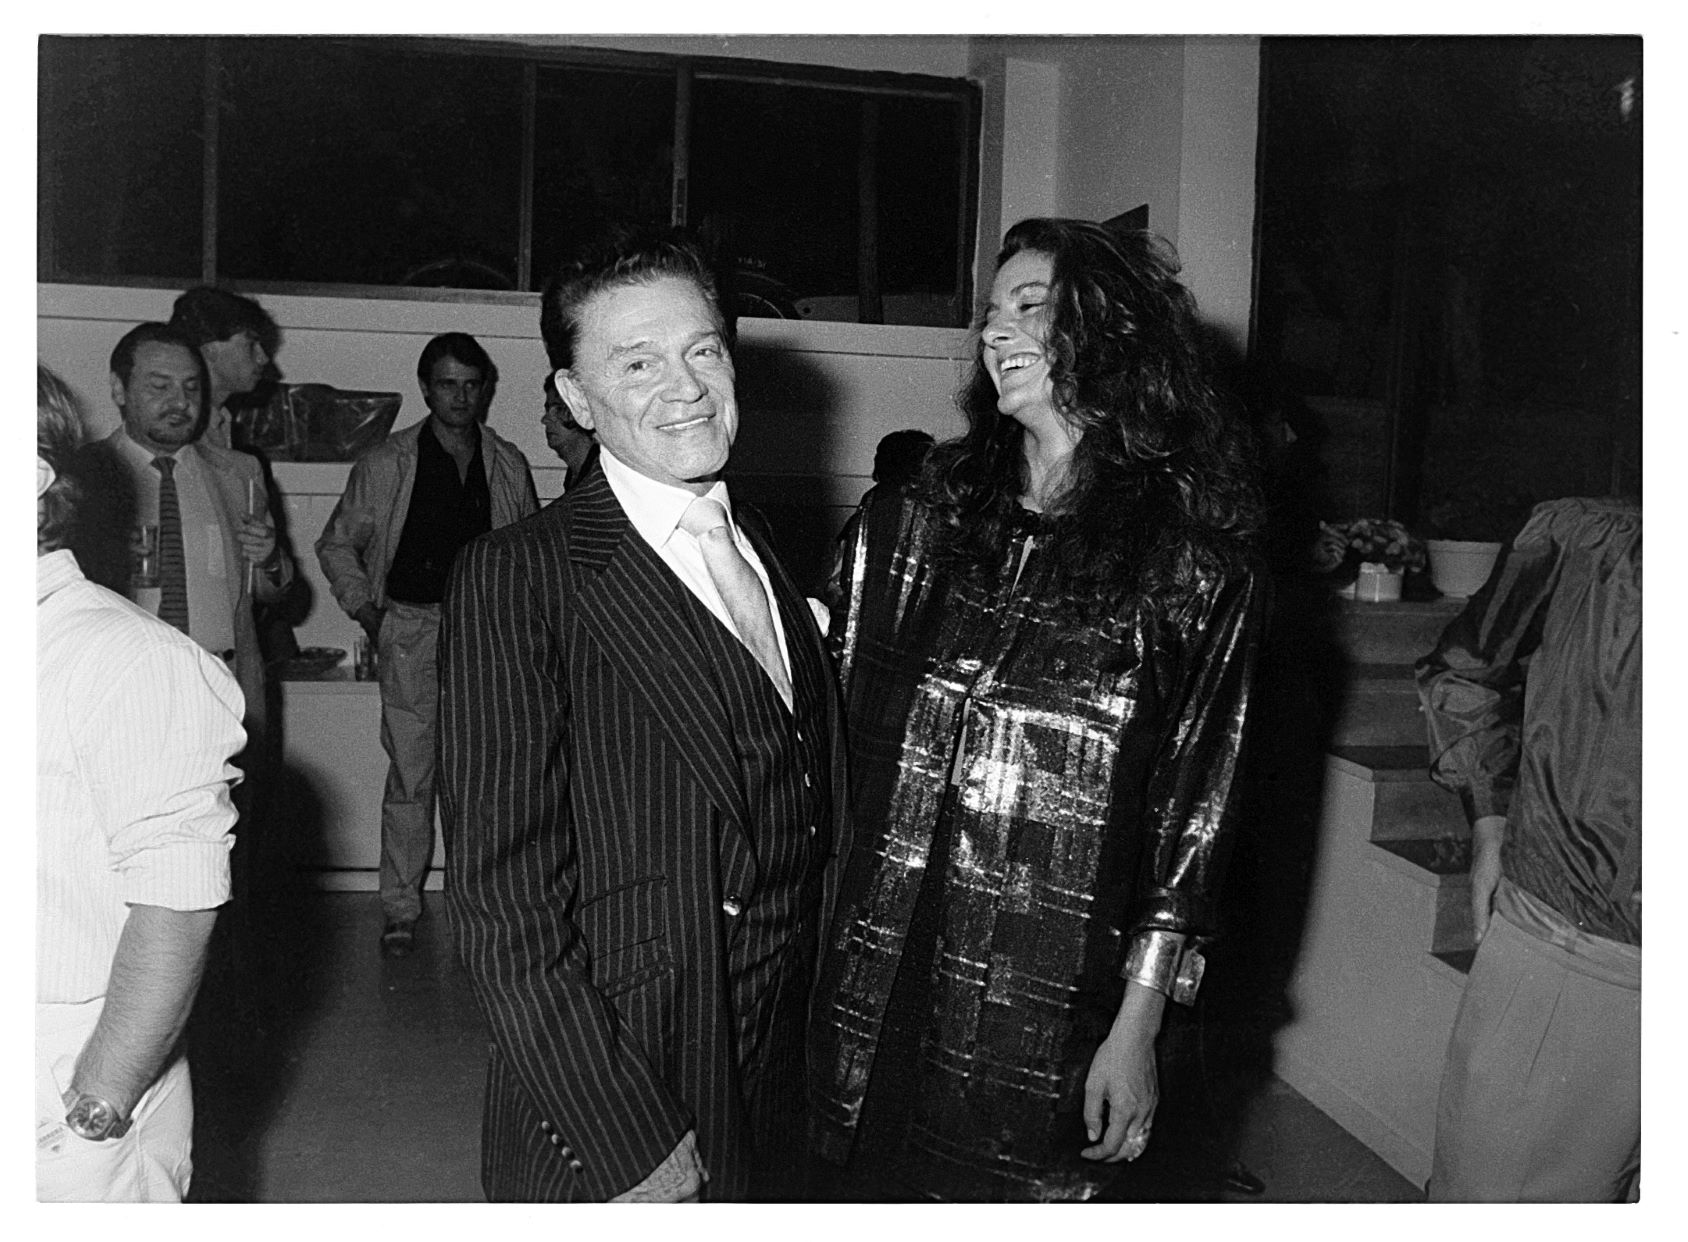 Η Μαρία Δημητριάδη με τον Αλέξανδρο Ιόλα στα εγκαίνια της έκθεσης του Harold Stevenson που διοργάνωσαν μαζί στη Μέδουσα το 1985